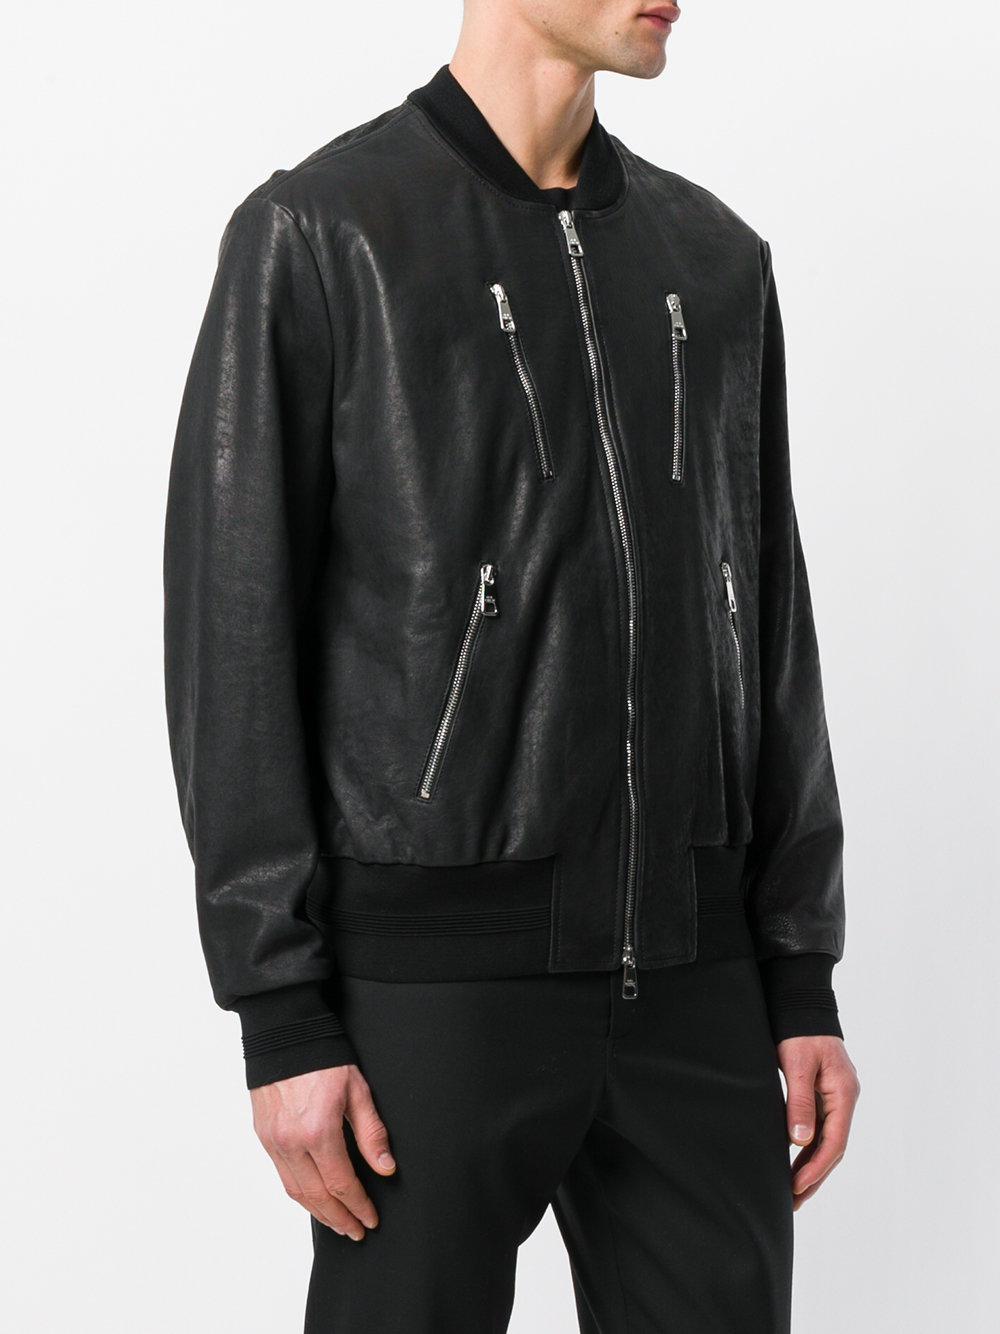 Neil Barrett Leather Bomber Jacket in Black for Men - Lyst